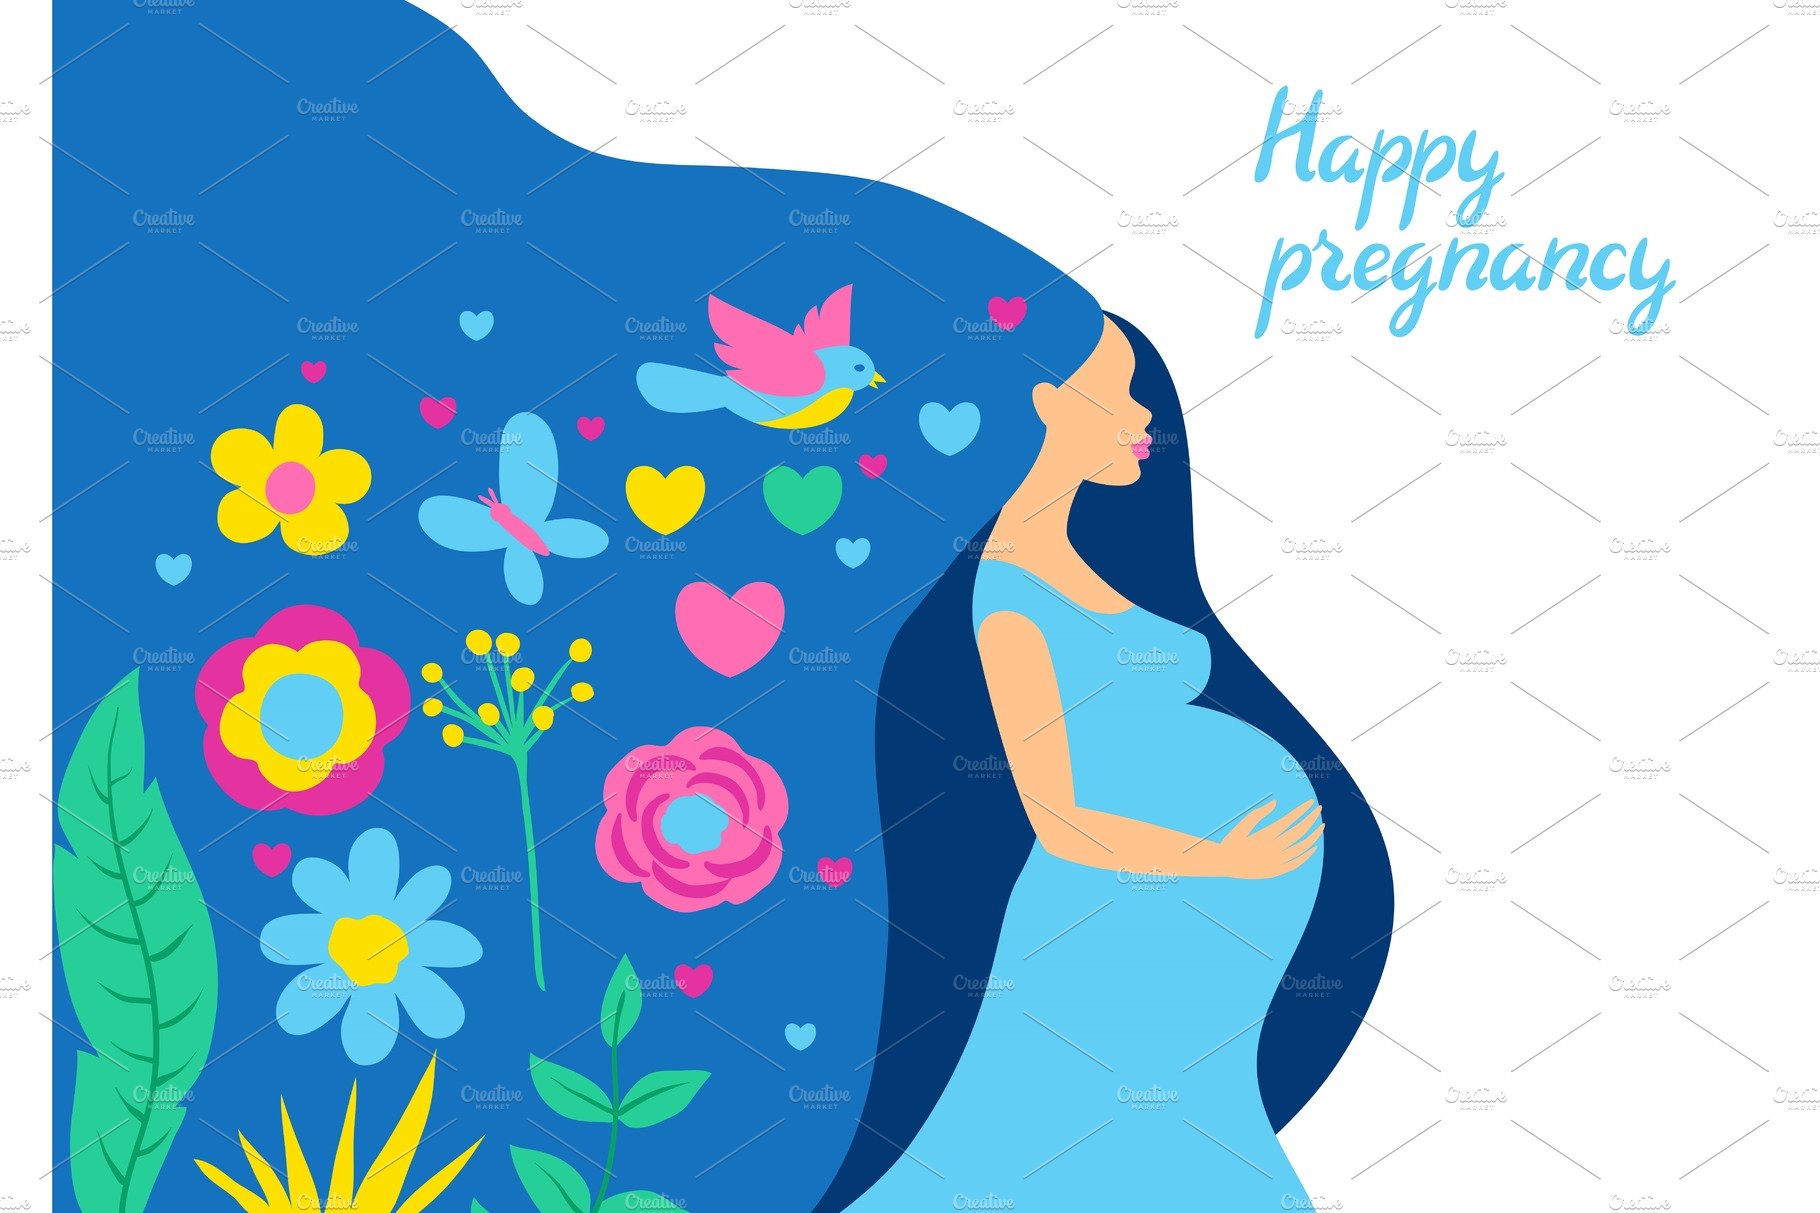 Happy pregnancy. Pretty pregnant cover image.